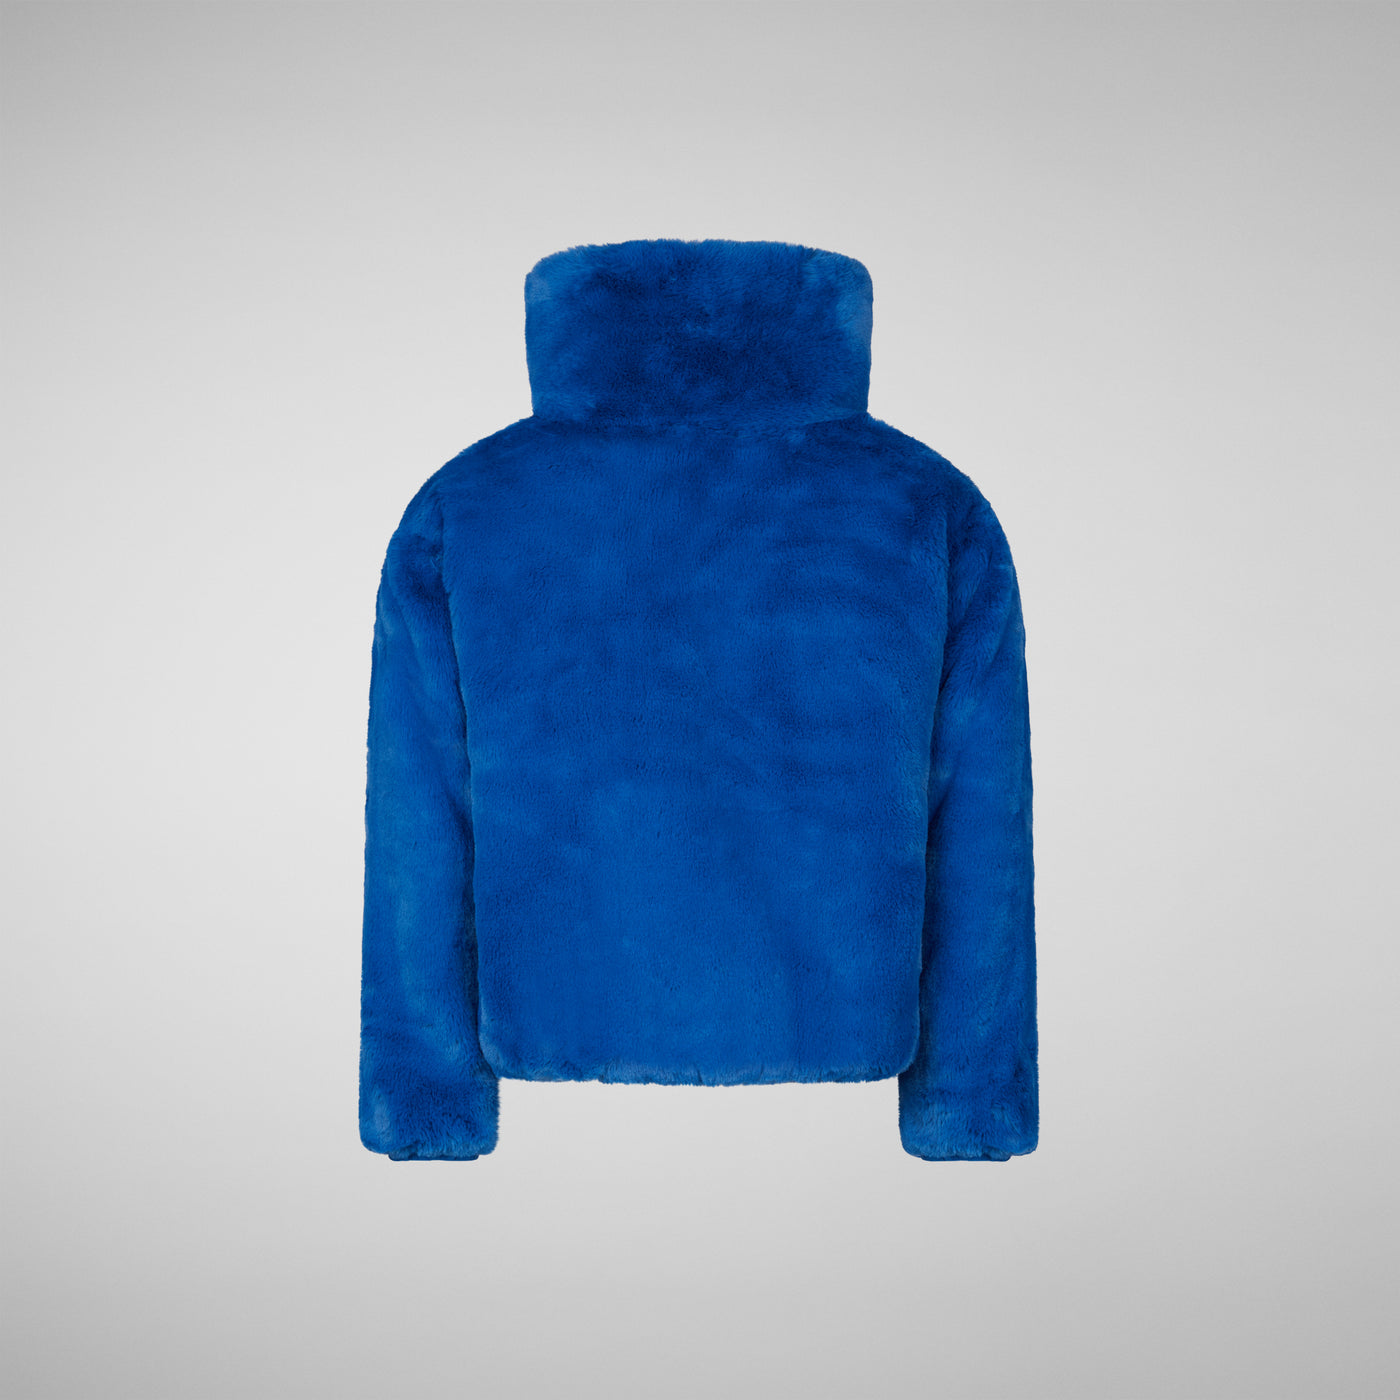 Girls' Ceri Faux Fur Reversible Jacket in Blue Berry